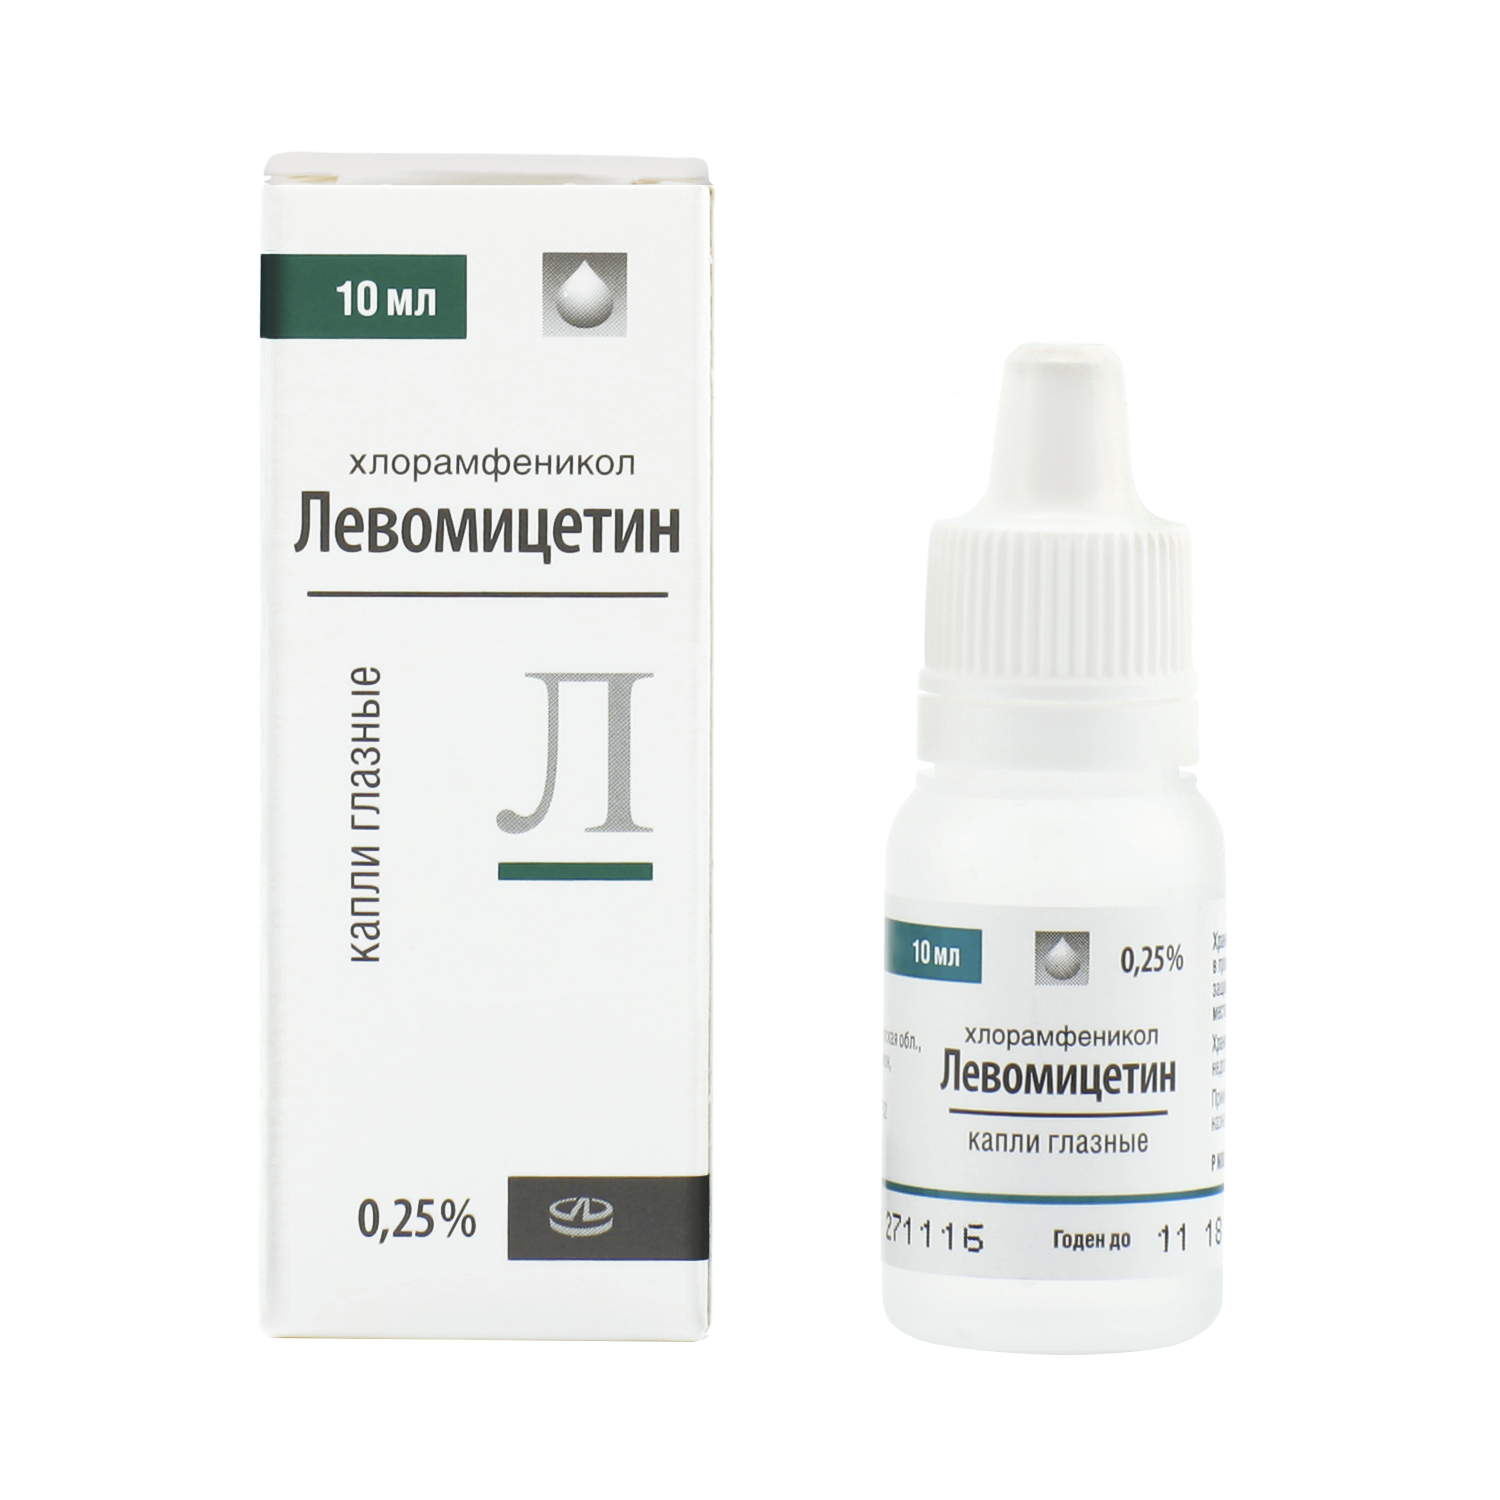 Левомицетин-лекко капли глазные 0,25% 10 мл  в Невели, цена 16,0 .